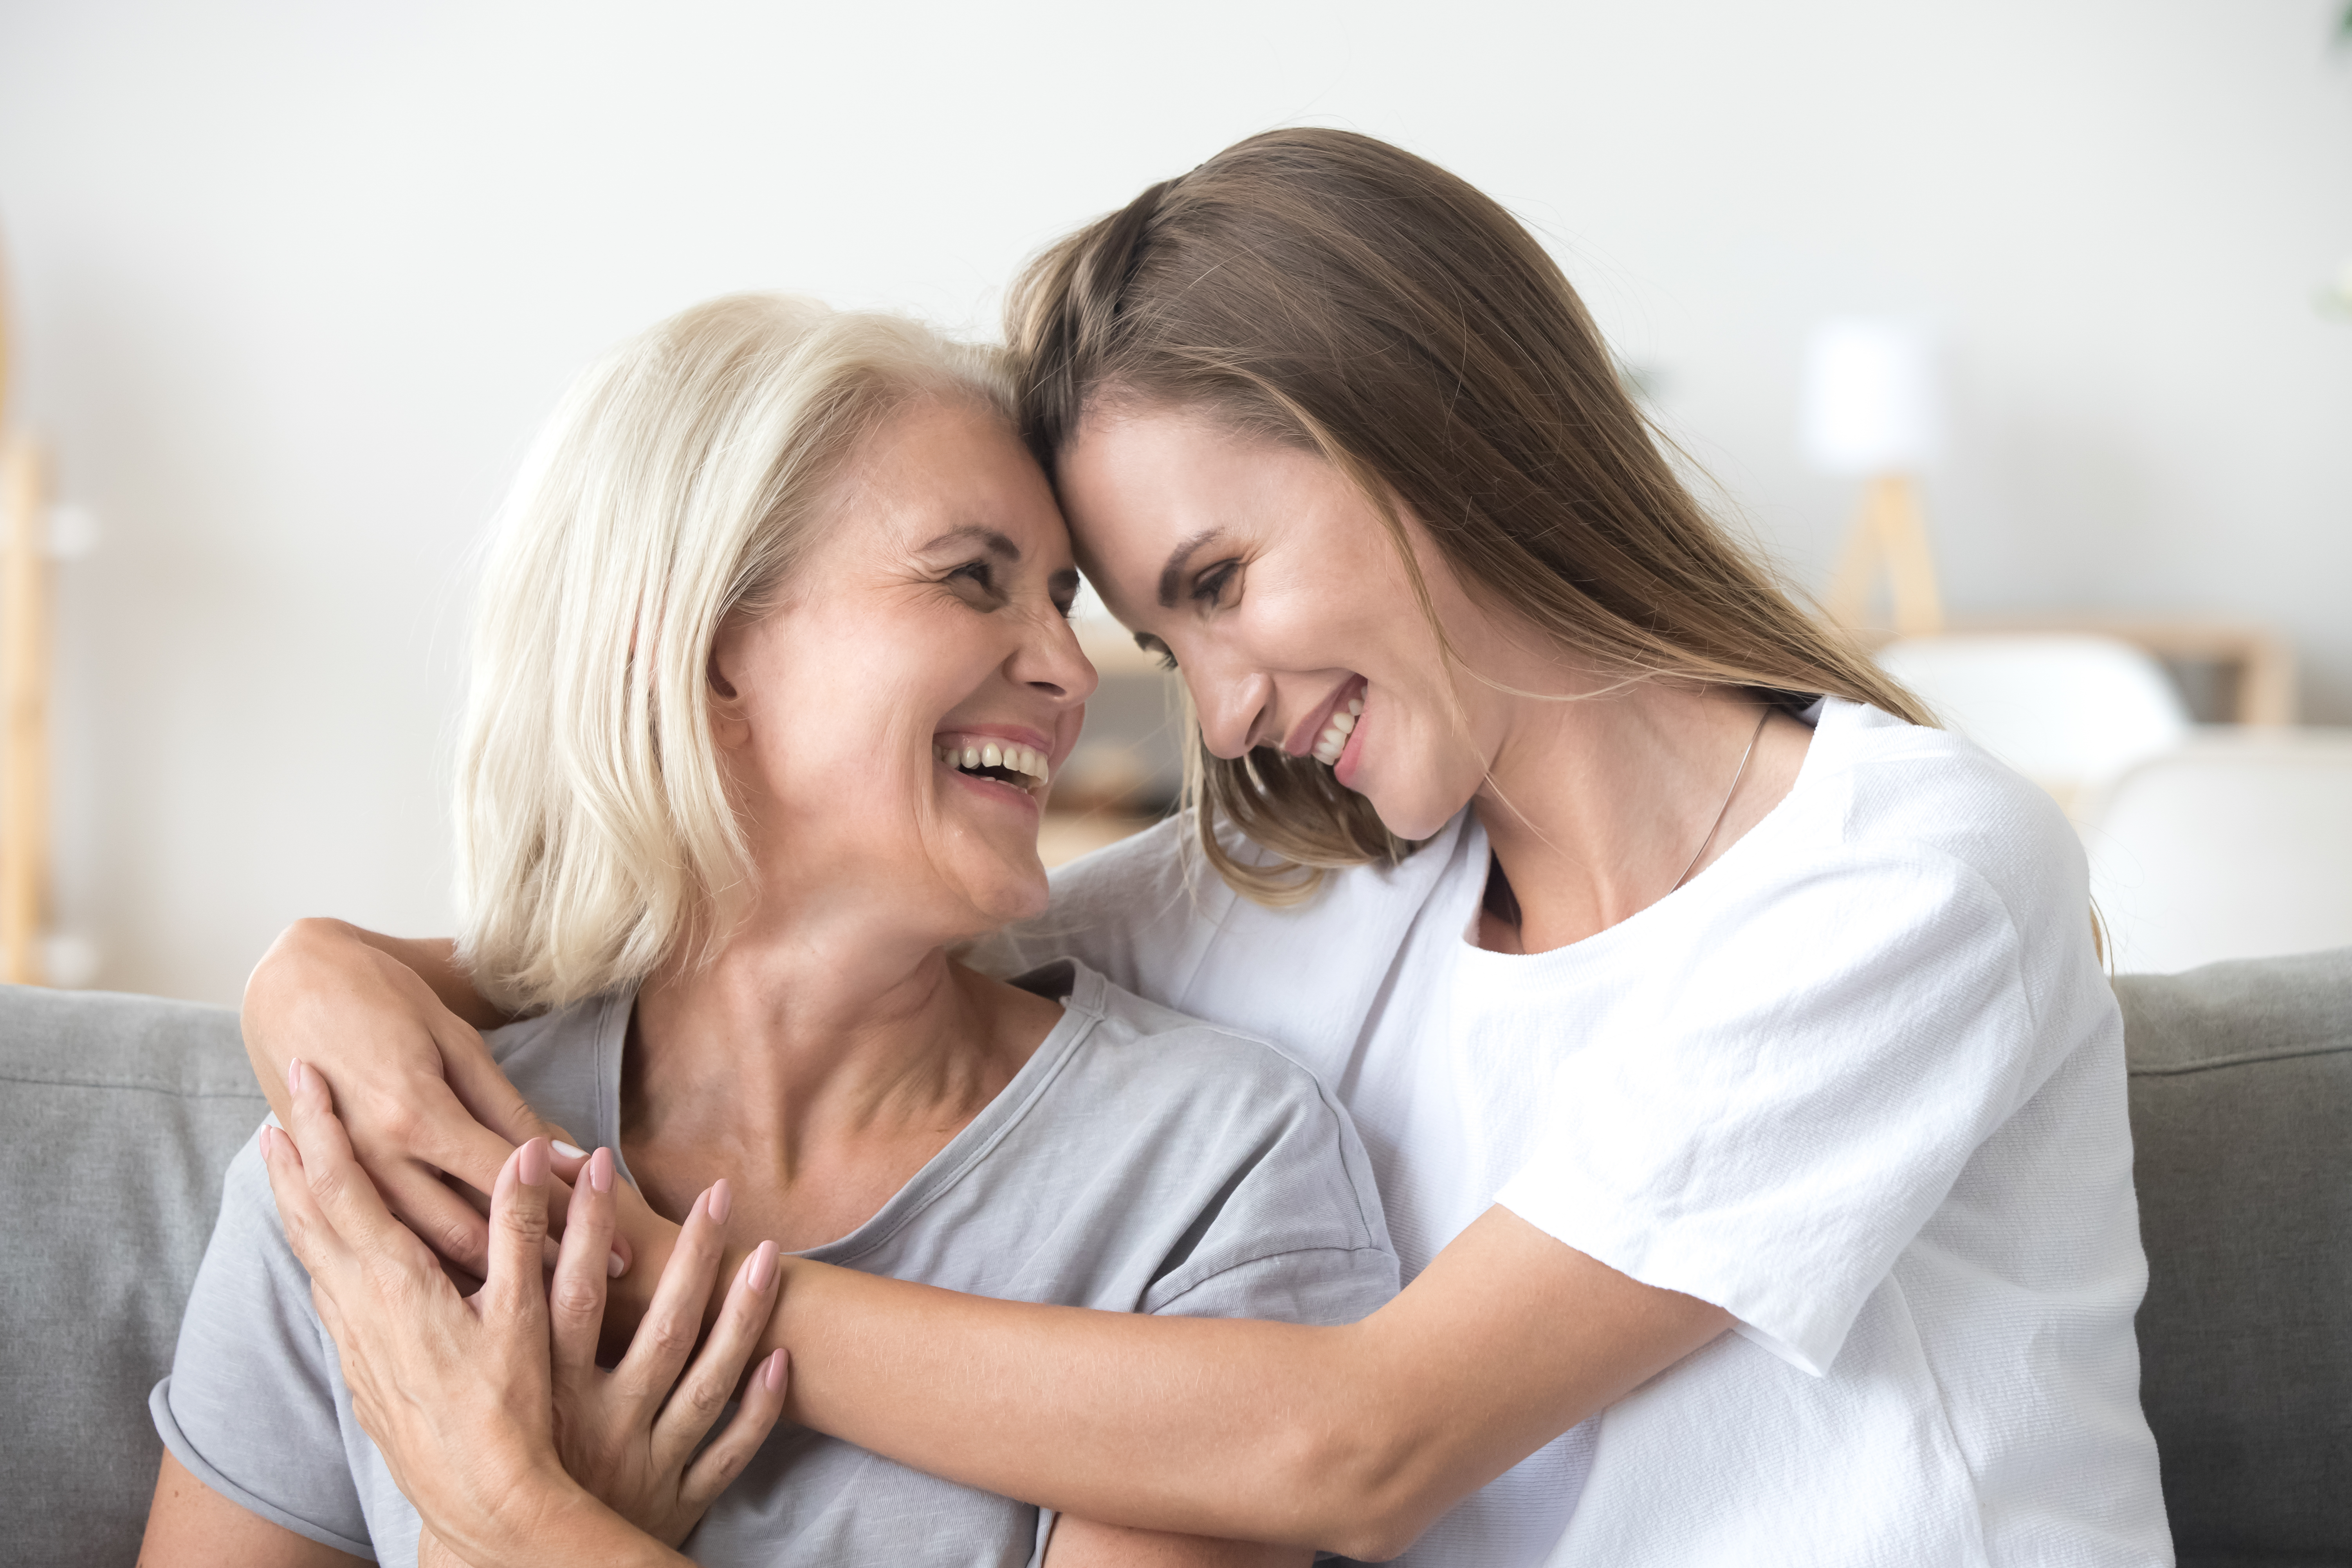 Une mère et sa fille ont l'air heureuses | Source : Shutterstock